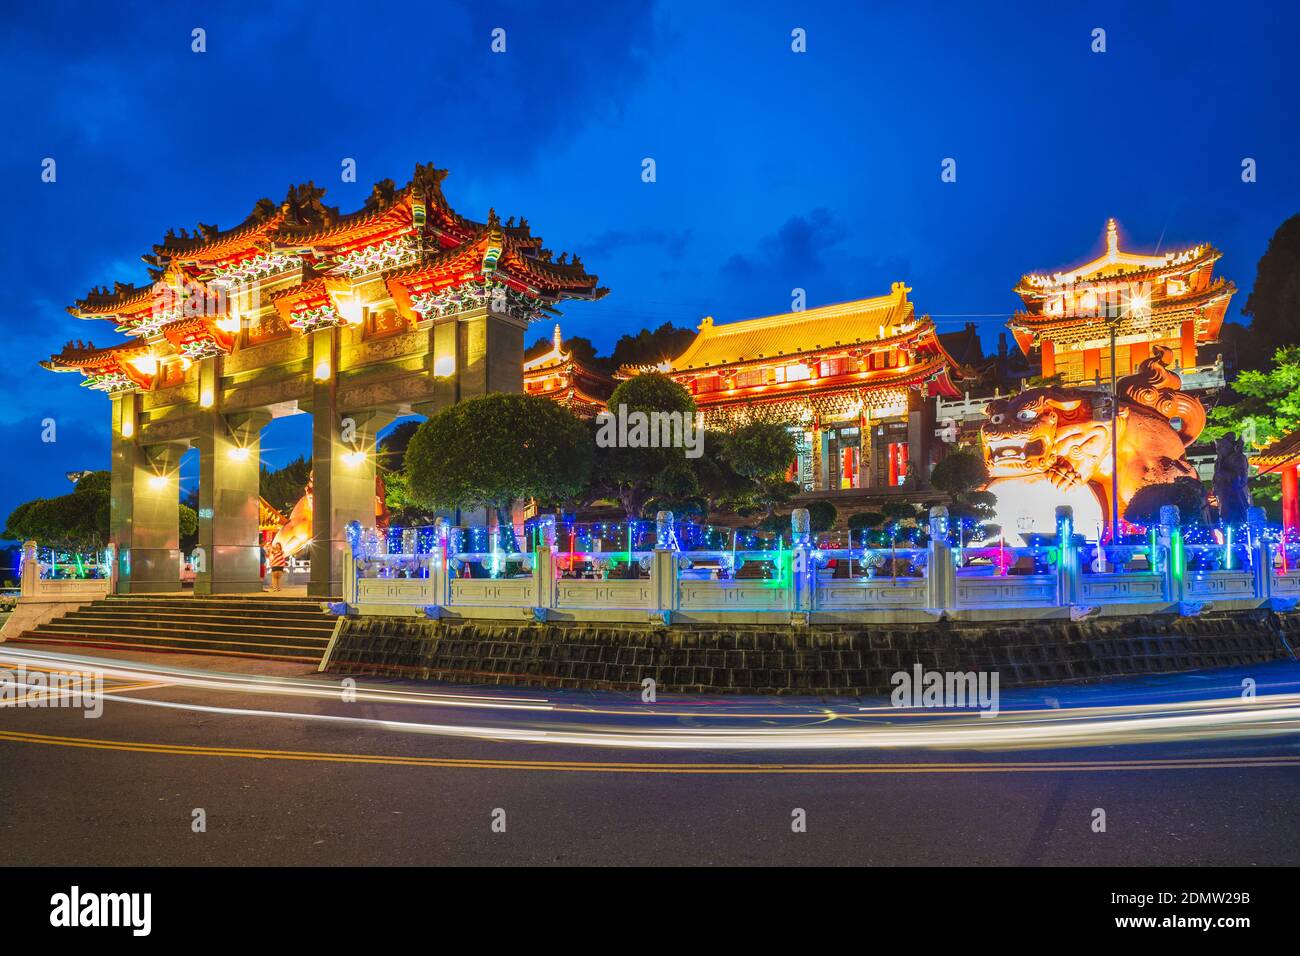 Scena notturna del Tempio di Wen Wu a Nantou. Traduzione: wen wu tempio, Foto Stock